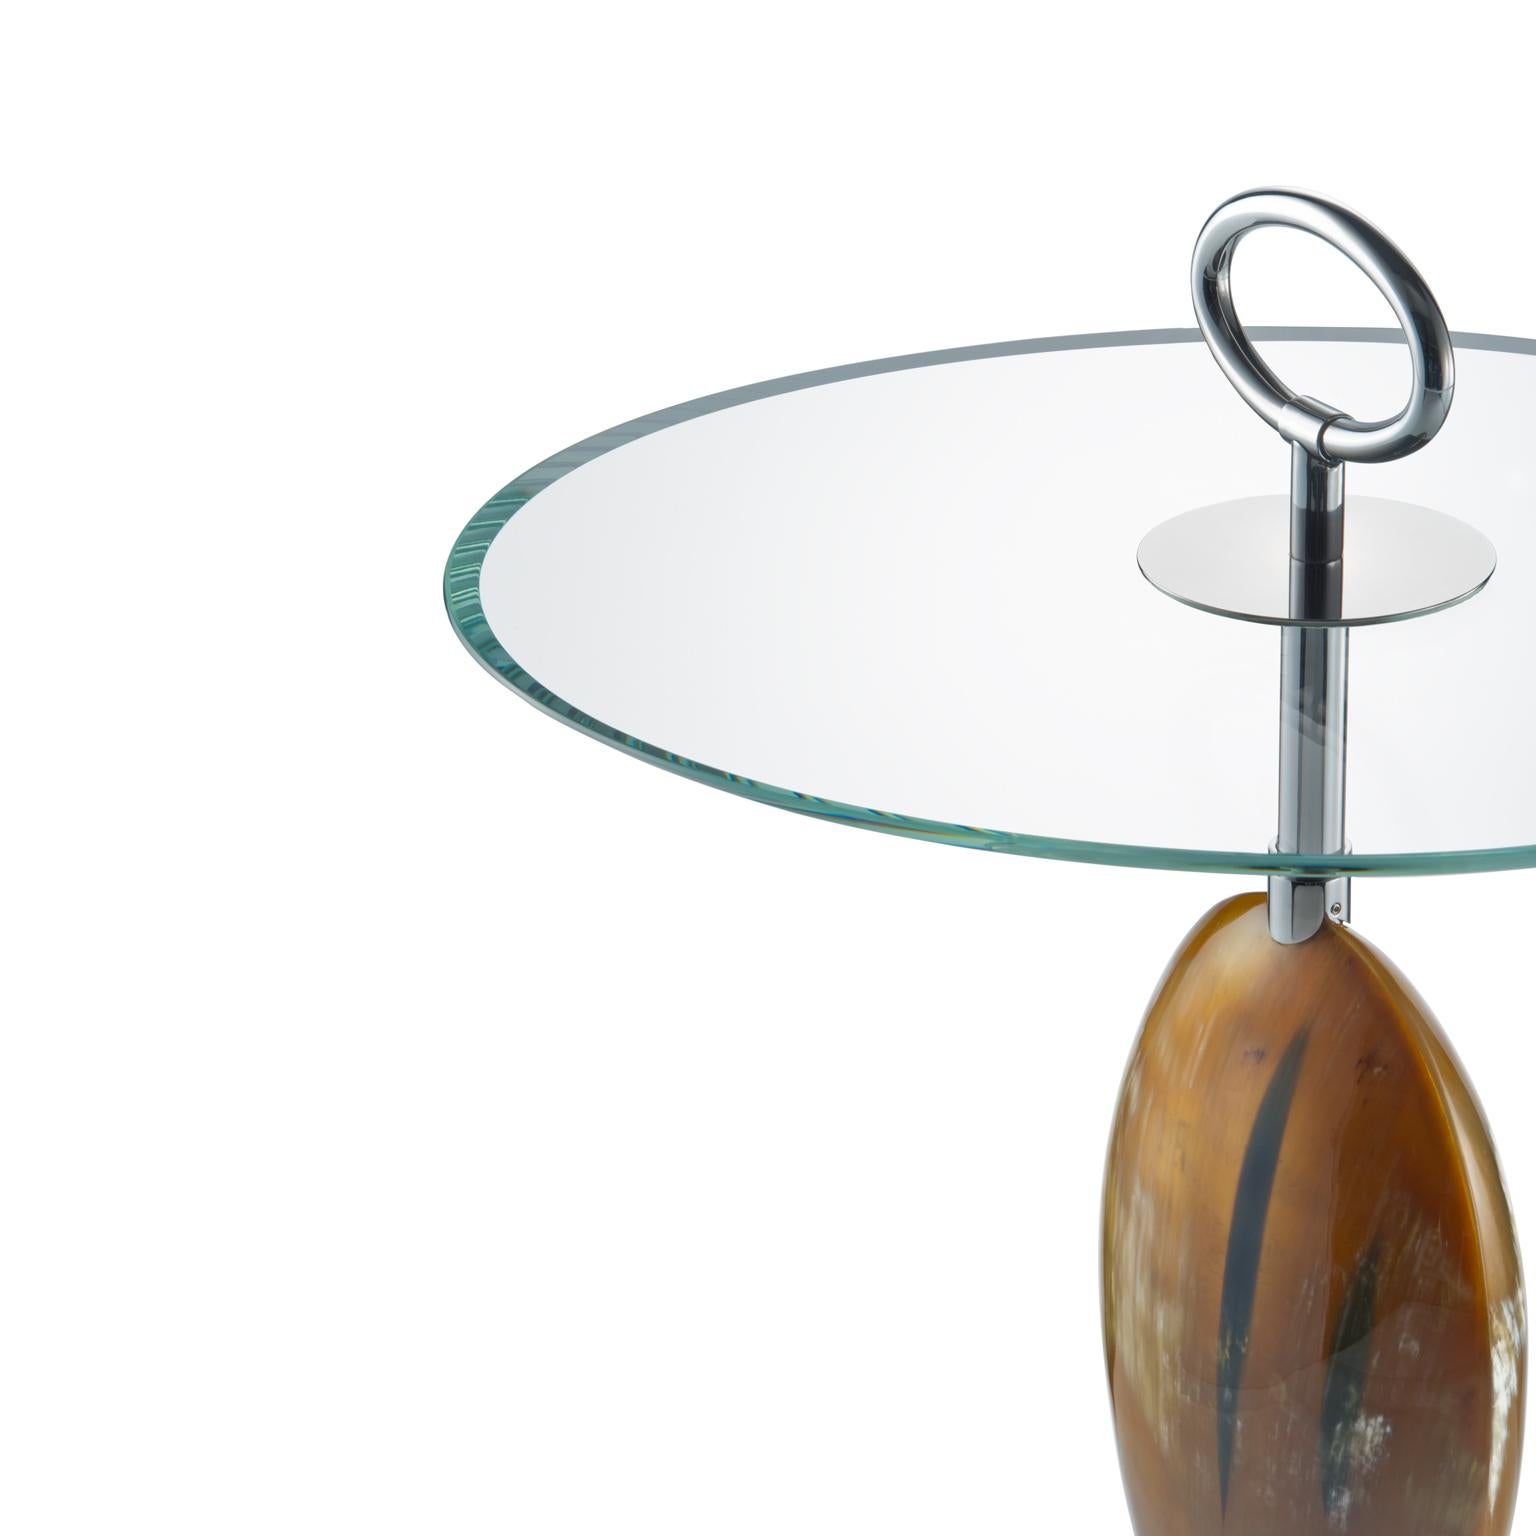 Exemple parfait d'un art impeccable, la table d'appoint Macari vous séduira dès le premier regard. Doté d'une structure élégante et d'une base en laiton chromé, ce design est rendu unique par une pièce décorative de forme ovale en Corno Italiano